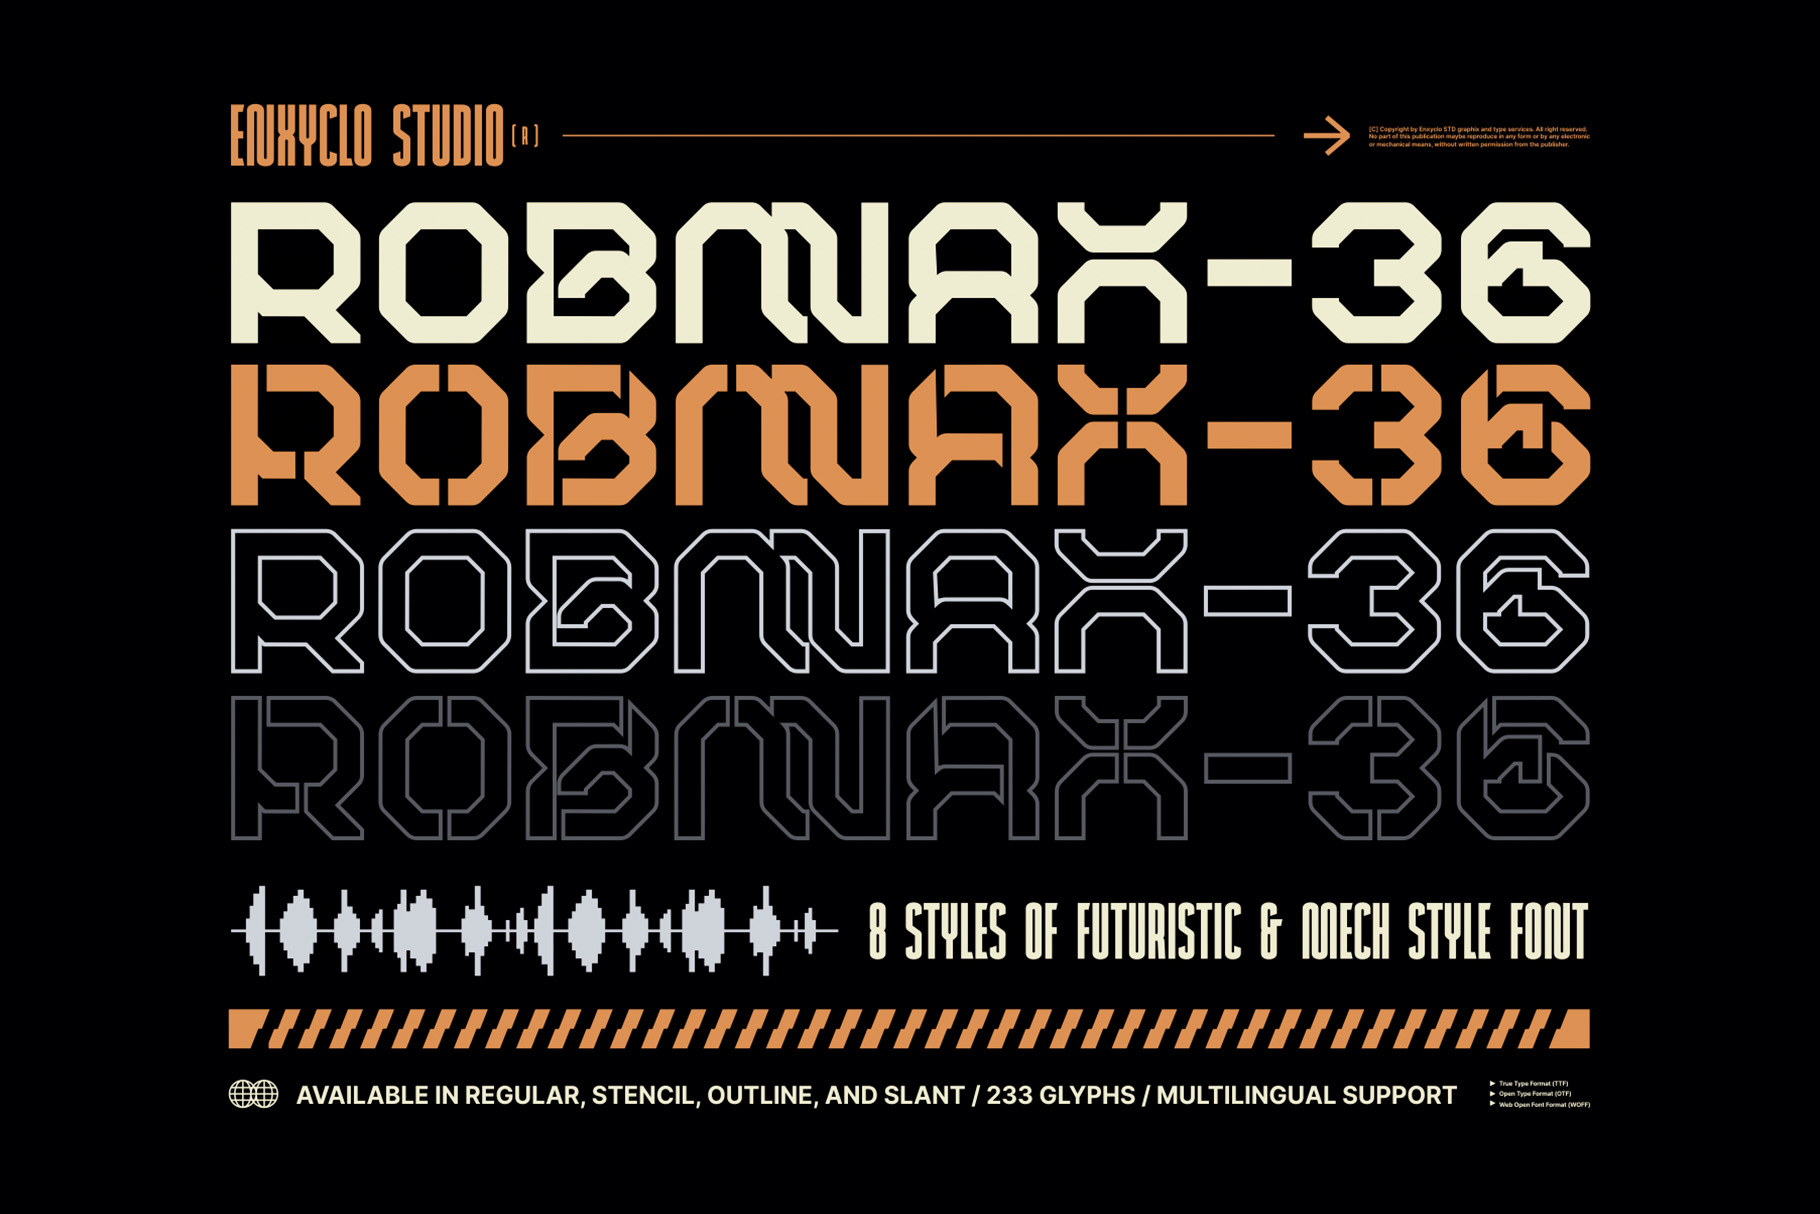 ROBMAX-36